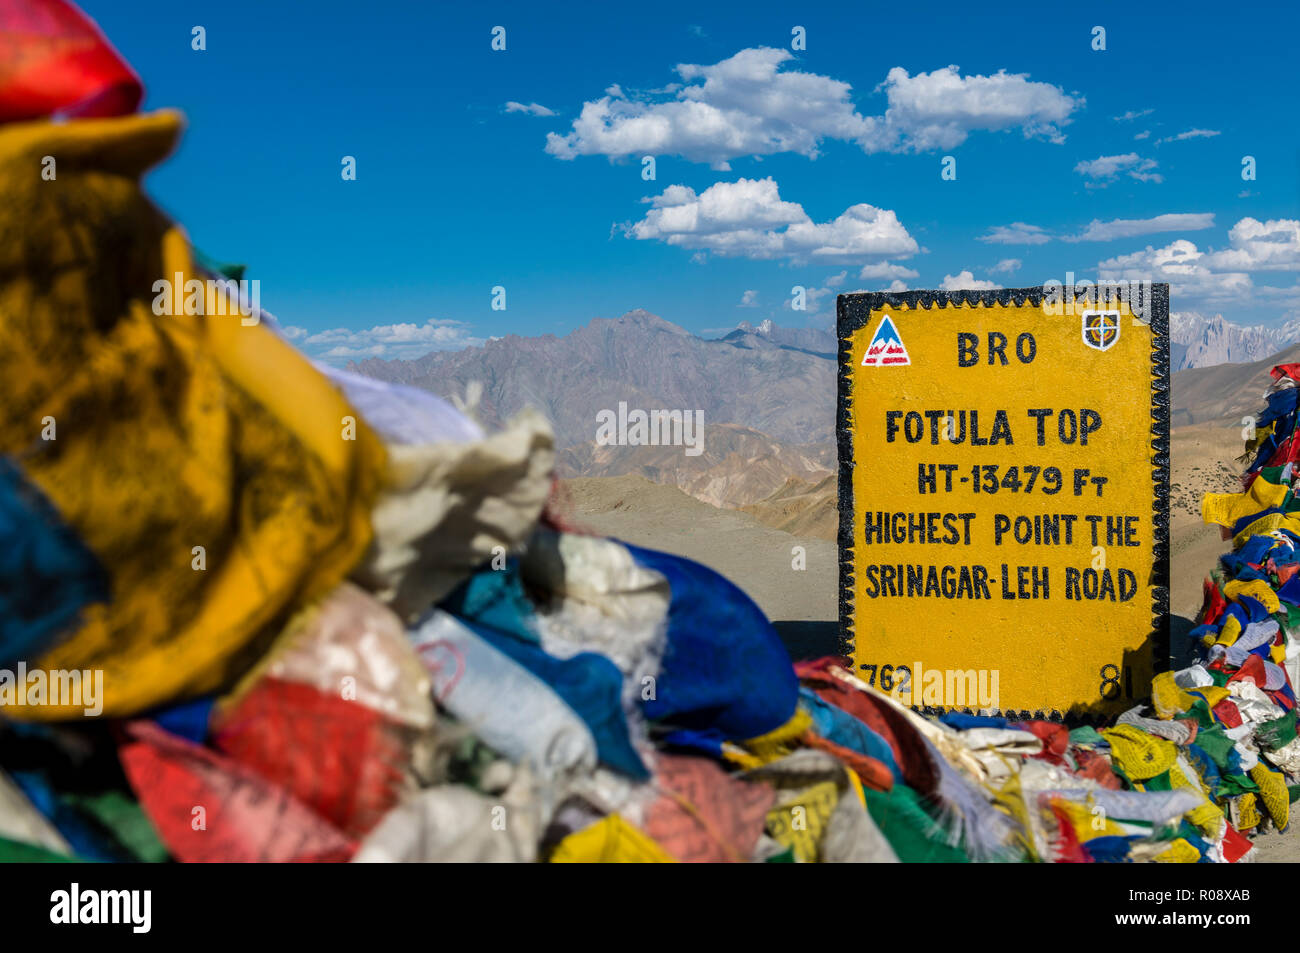 Der Meilenstein am Fotu La top, ein Pass auf einer Höhe von 4.108 m über dem Meeresspiegel auf Srinagar-Leh - Autobahn, umgeben von buddhistische Gebetsfahnen Stockfoto